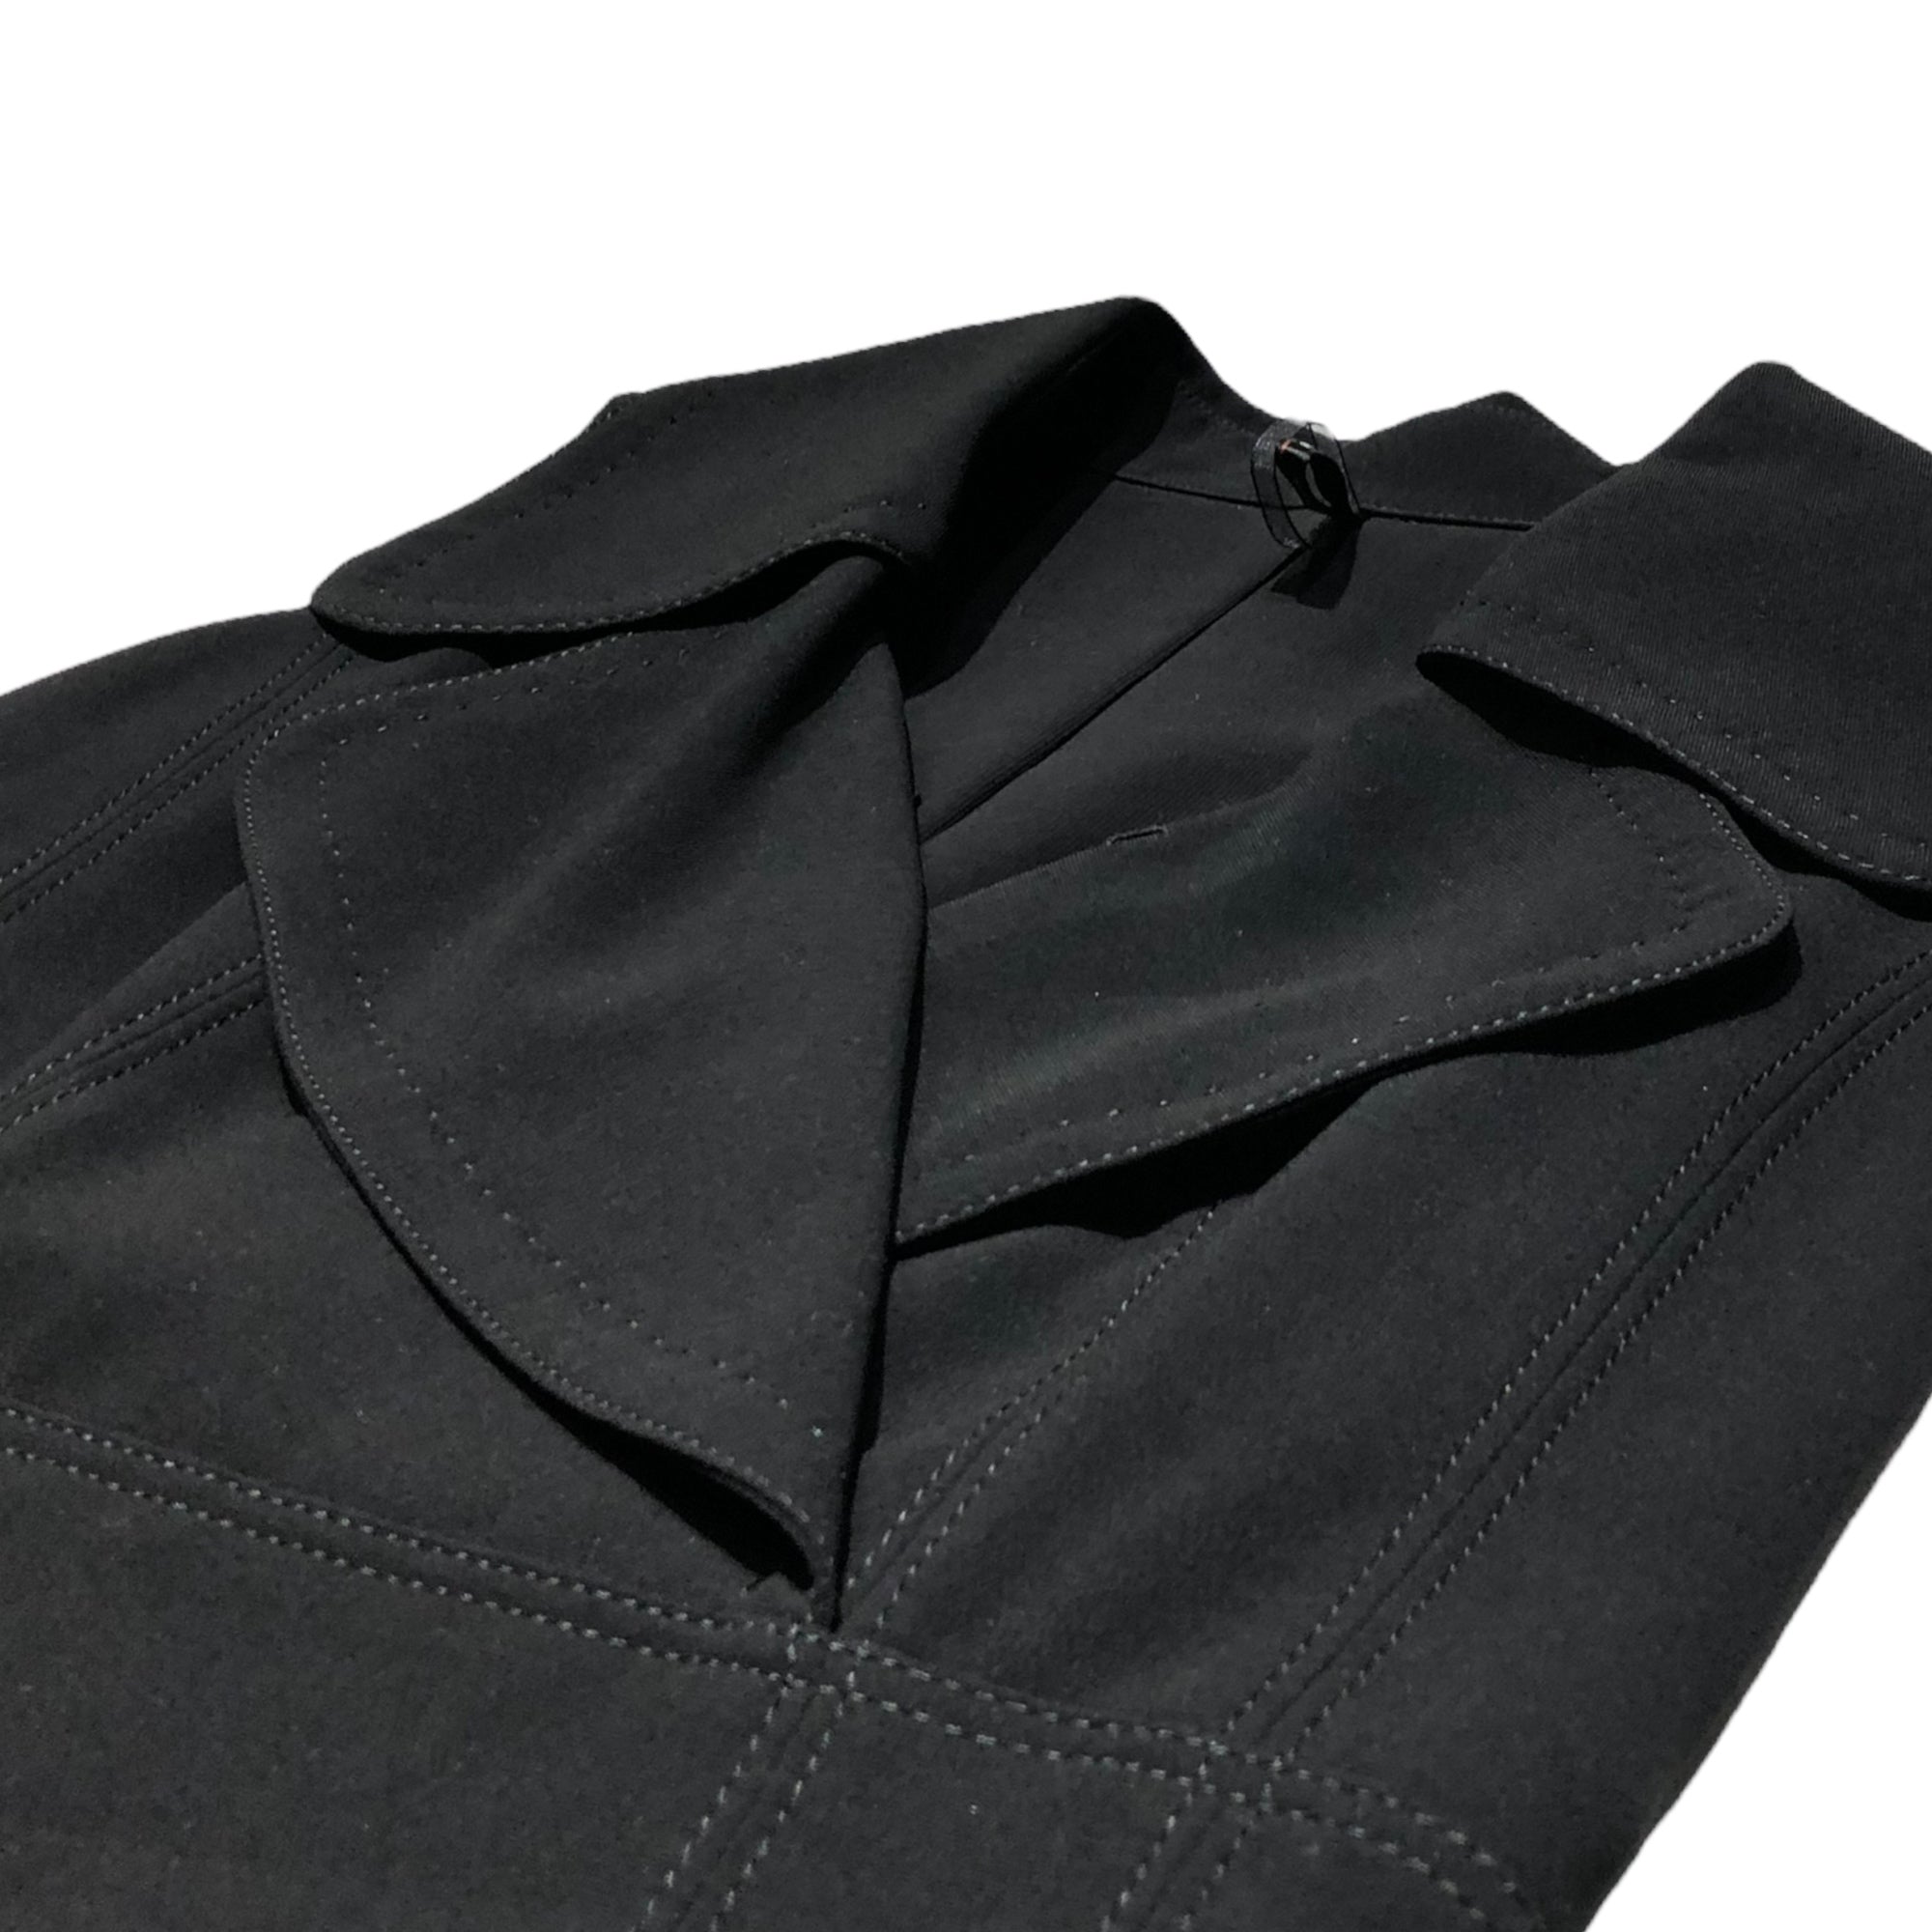 BURBERRY BLACK LABEL(バーバリーブラックレーベル) トレンチカラーノースリーブワンピース/ドレス FM469-511-09 38(Mサイズ程度) ブラック